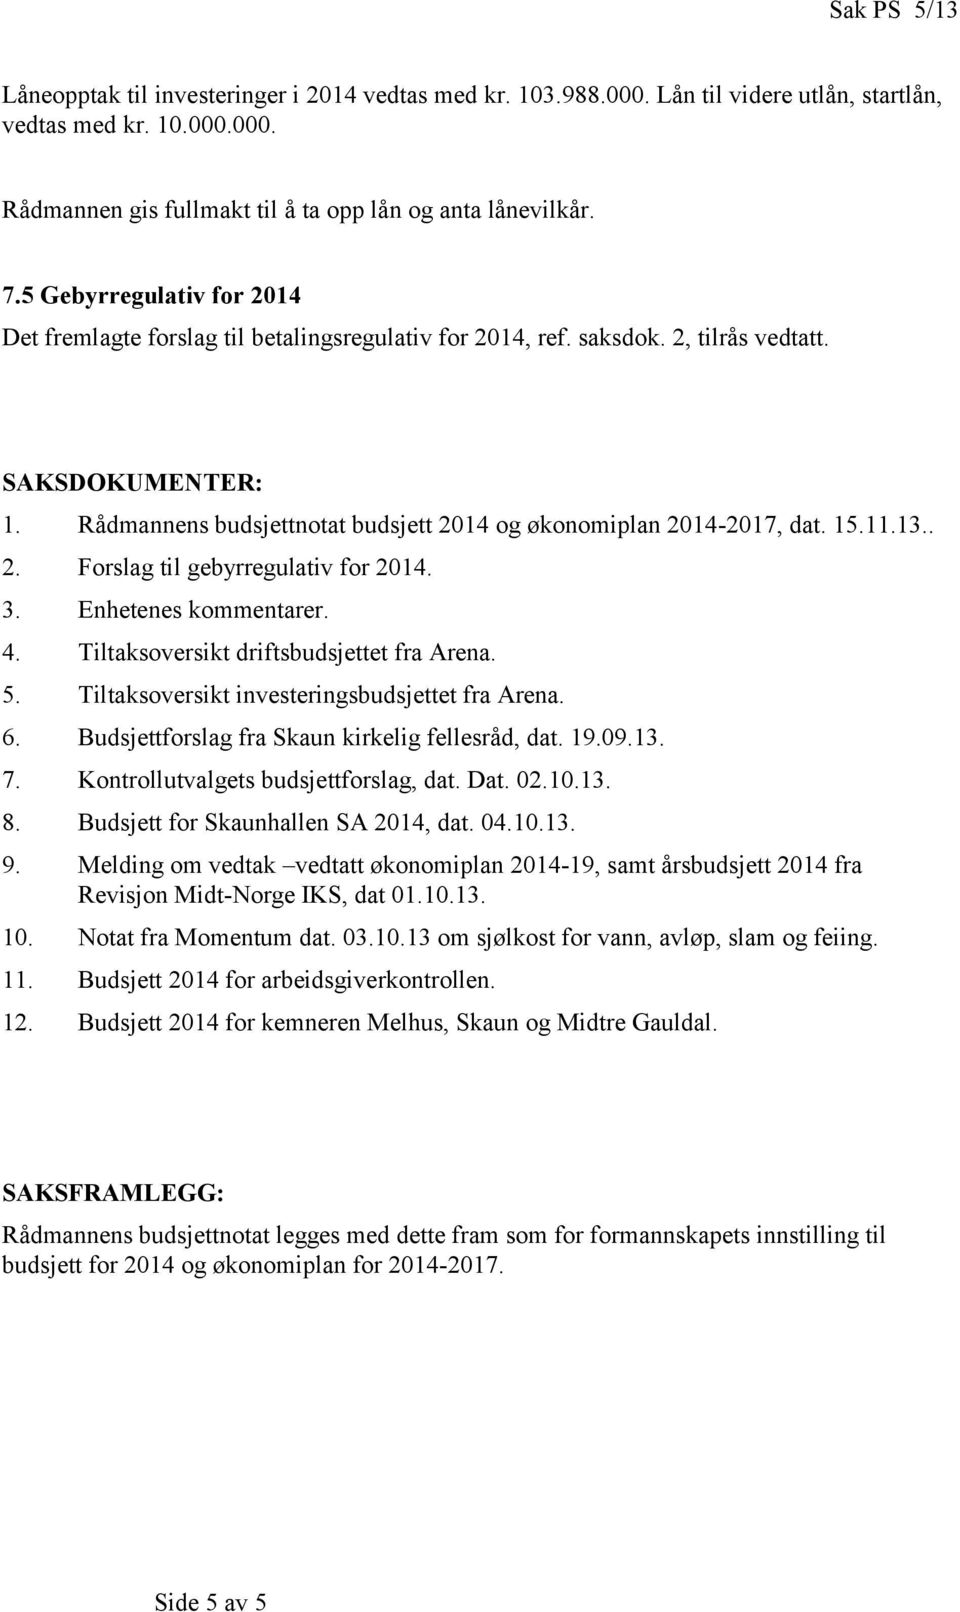 Rådmannens budsjettnotat budsjett 2014 og økonomiplan 20142017, dat. 15.11.13.. 2. Forslag til gebyrregulativ for 2014. 3. Enhetenes kommentarer. 4. soversikt driftsbudsjettet fra Arena. 5.